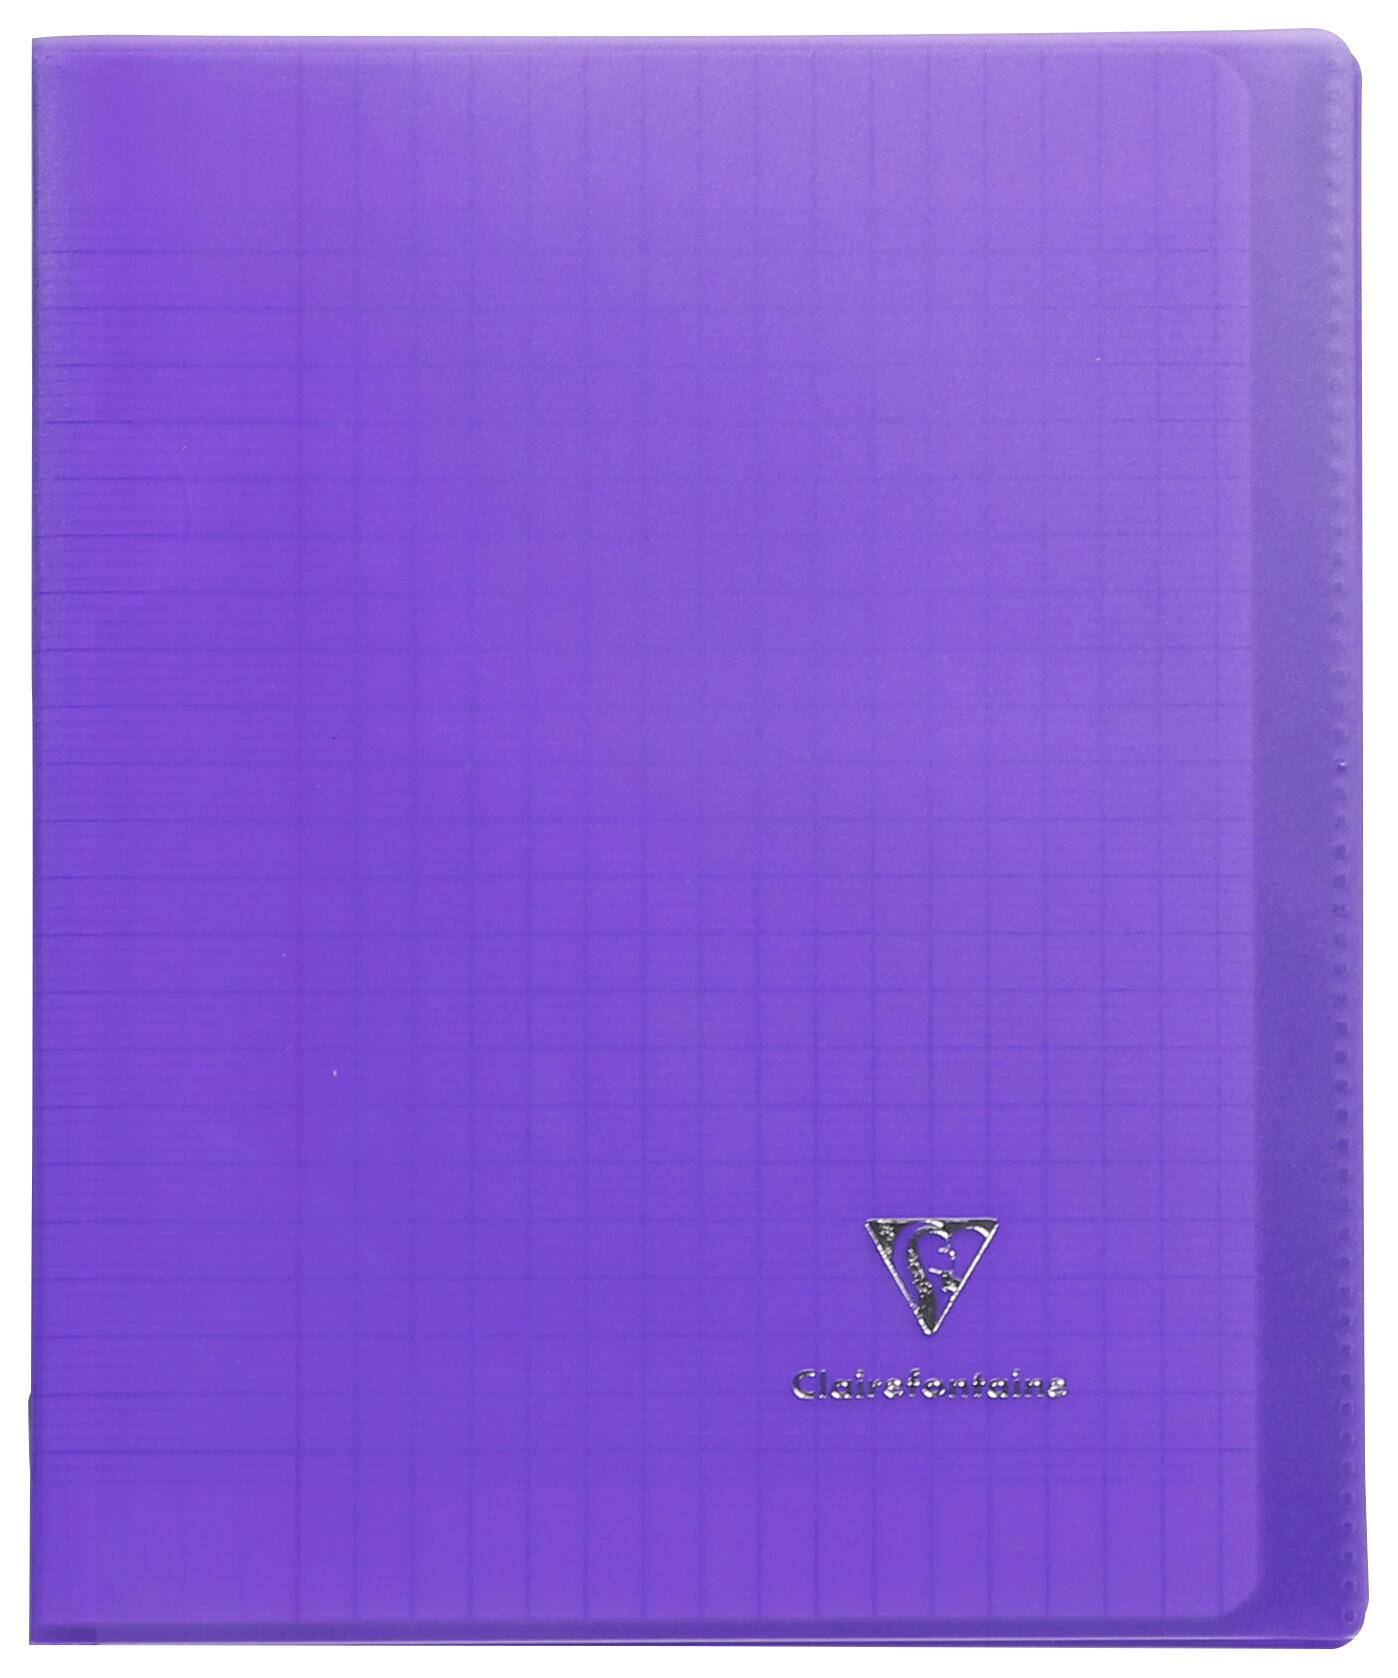 Piqure 17x22 - 90g - 96 p - Séyès - Koverbook couverture transparente Violette